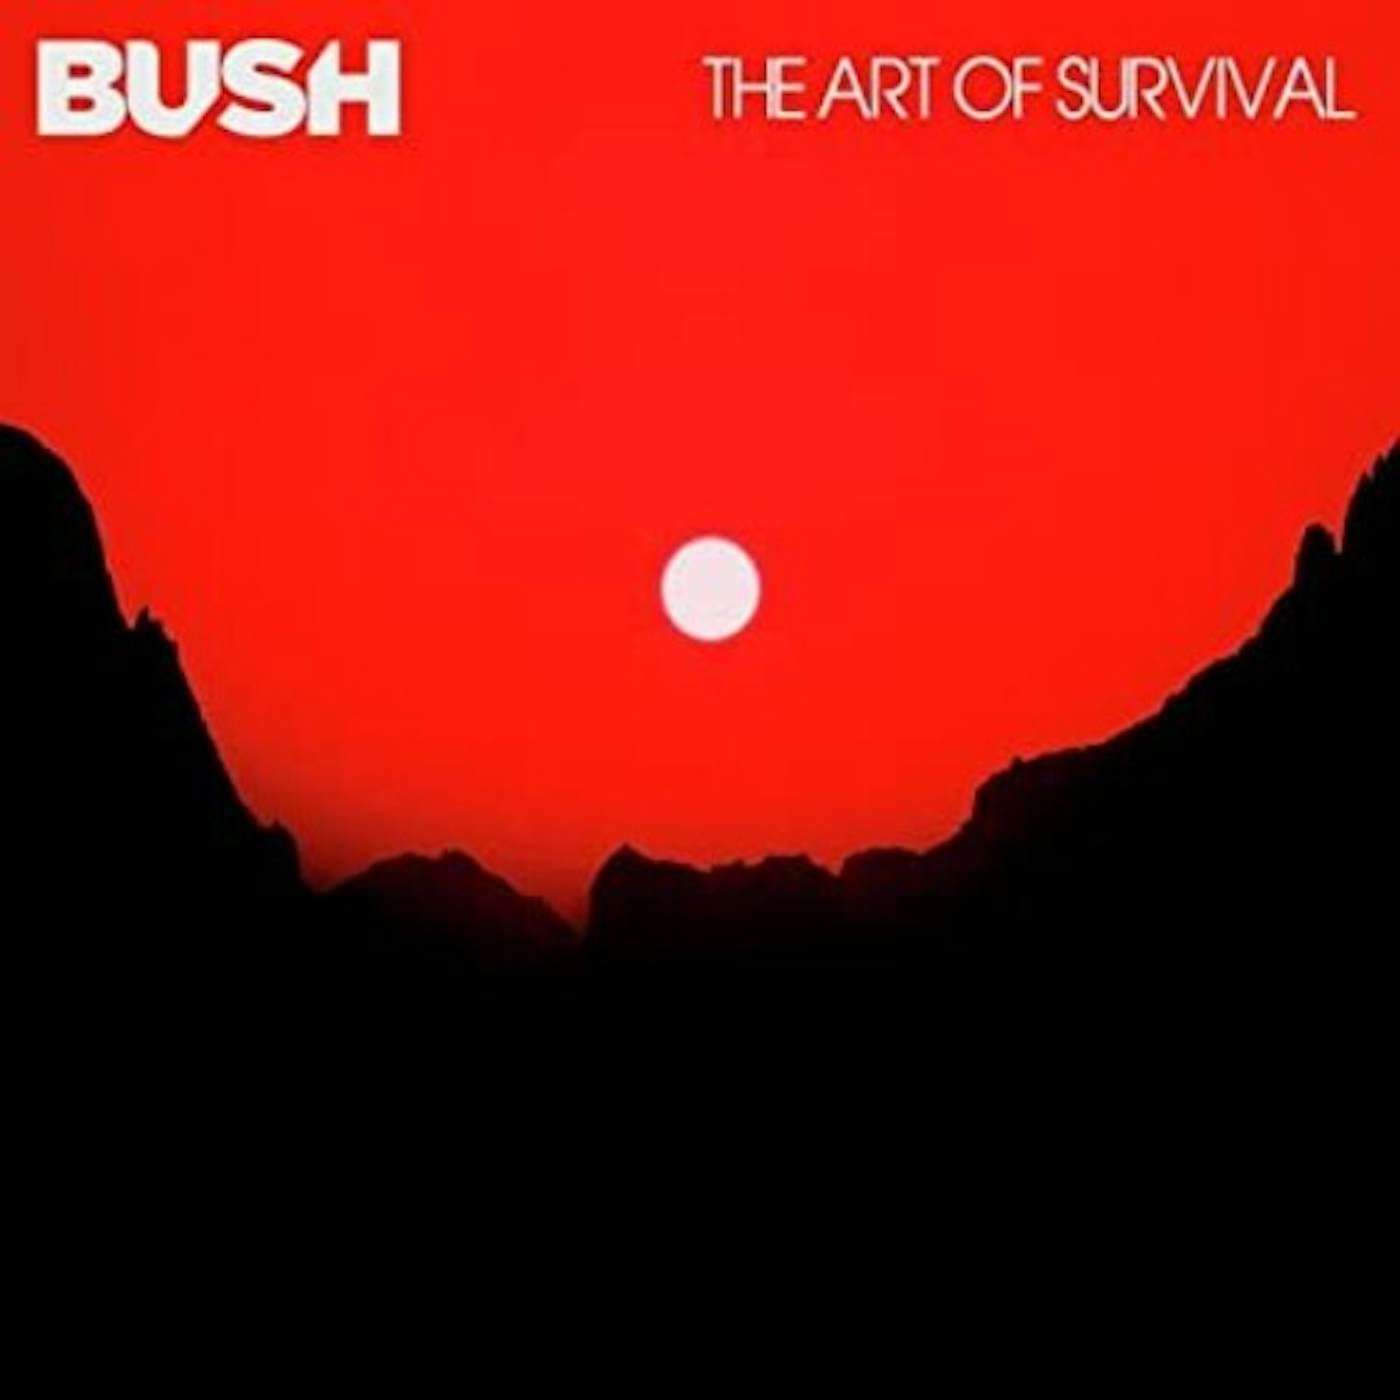 Bush ART OF SURVIVAL CD